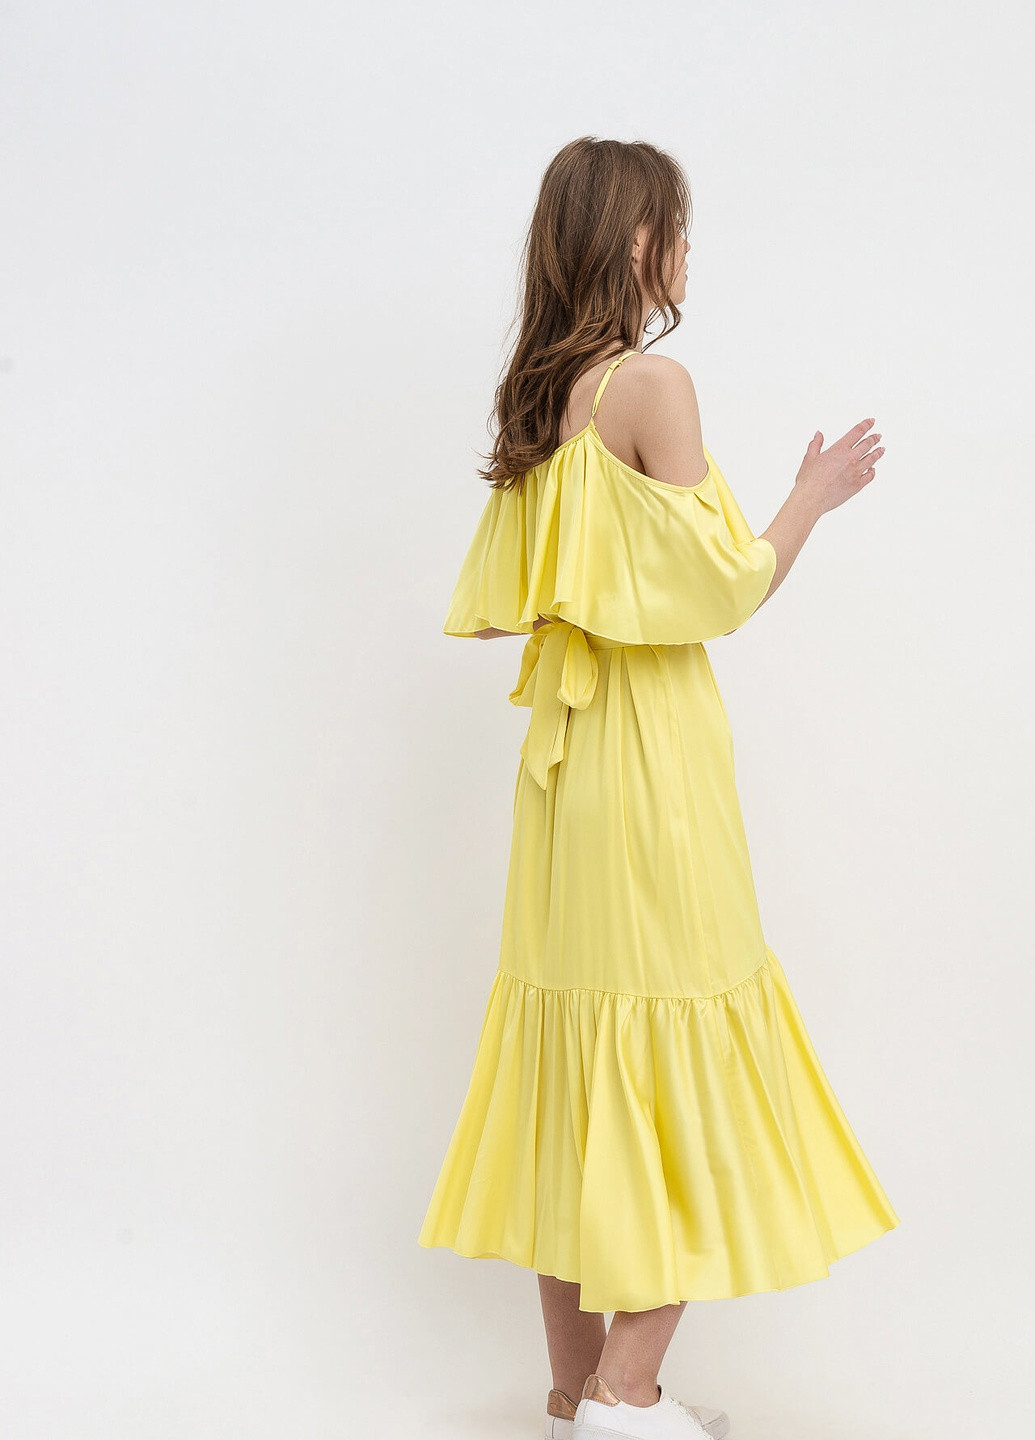 Жовтий ділова сукня Lesia однотонна